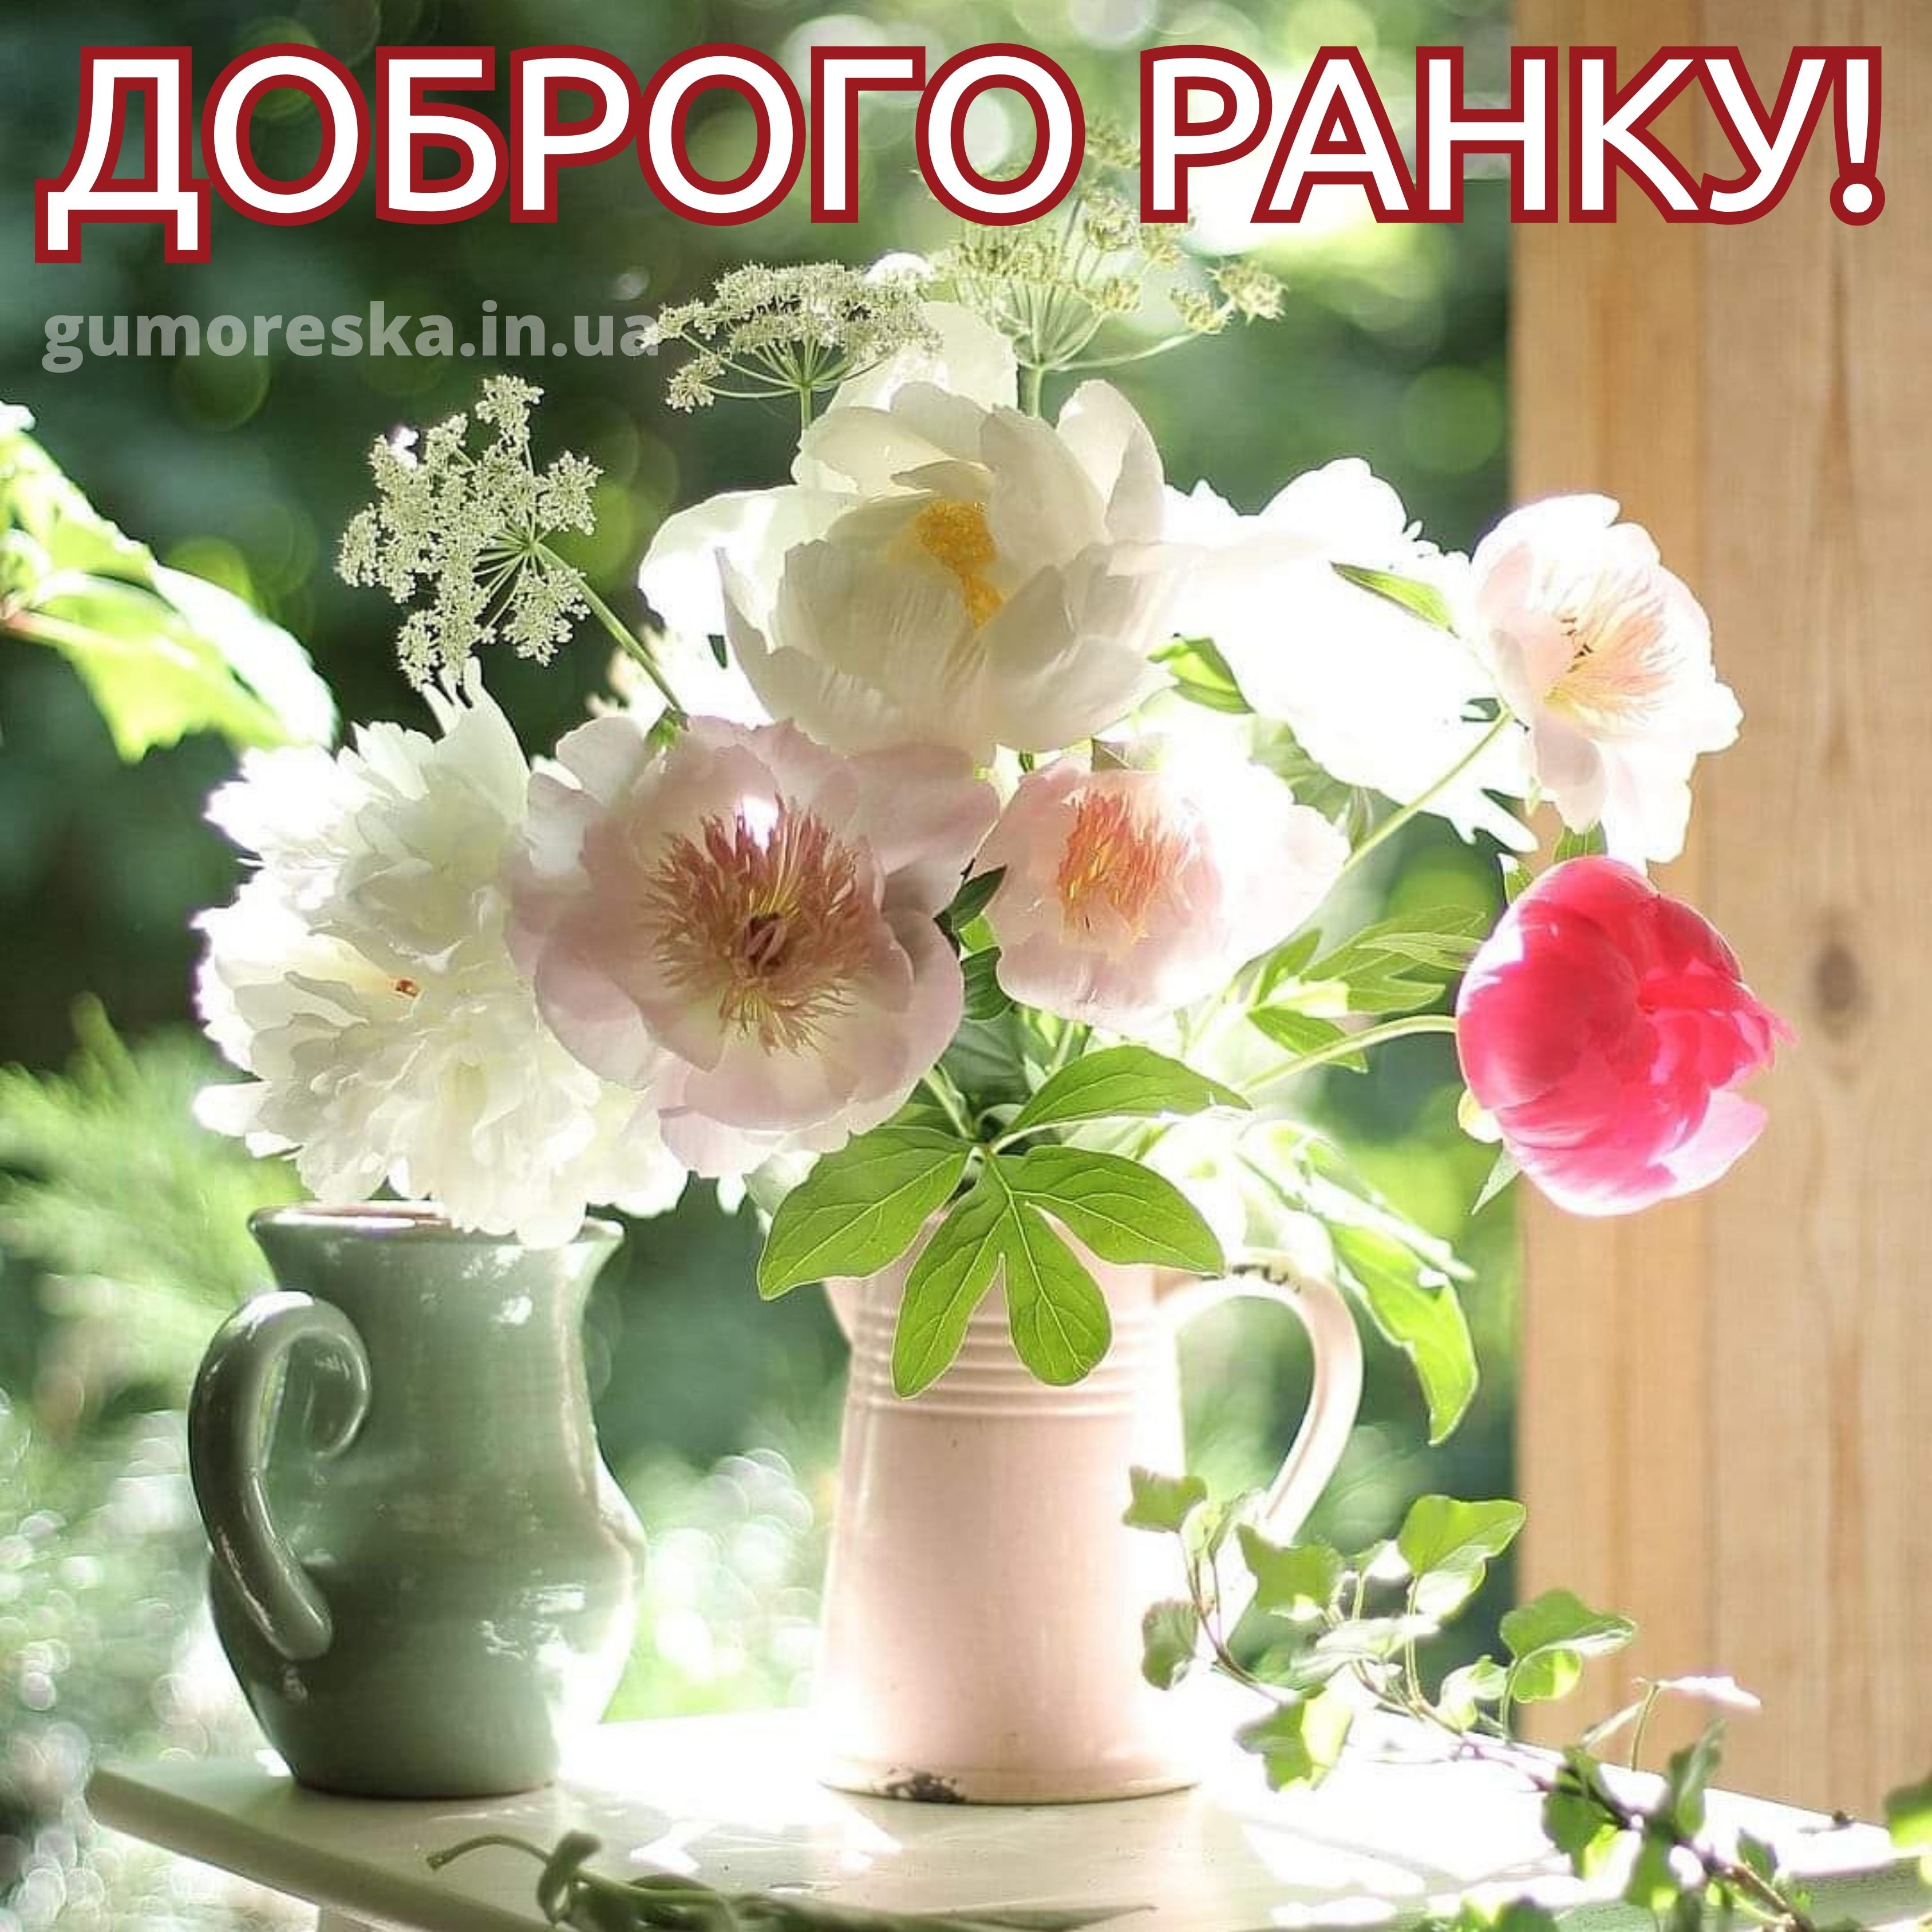 Хорошего нежного дня настроения. Утренние цветы. Нежный цветок. Летние цветы в вазе. Нежные солнечные цветы.